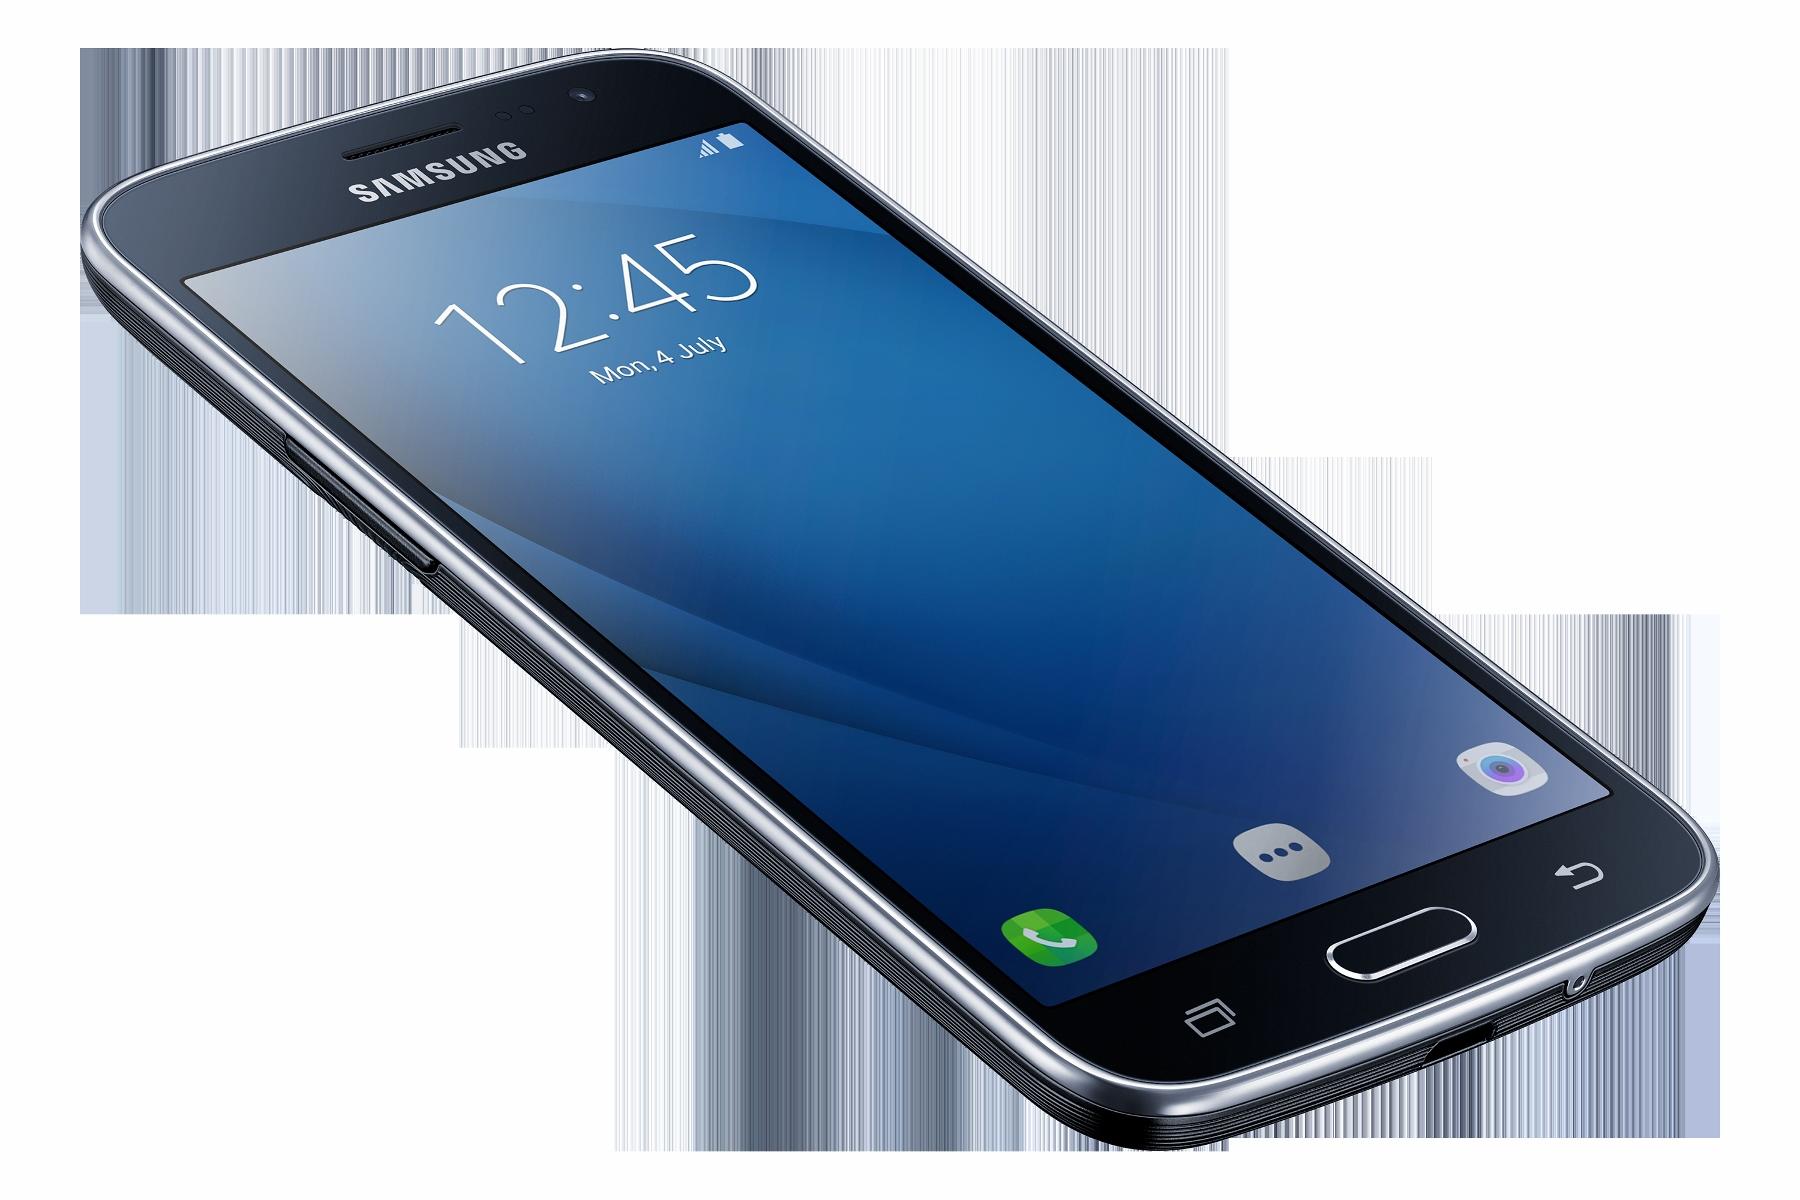 Samsung Adds Galaxy J2 16 And Galaxy J Max To Its Galaxy J Series Telecom News Et Telecom